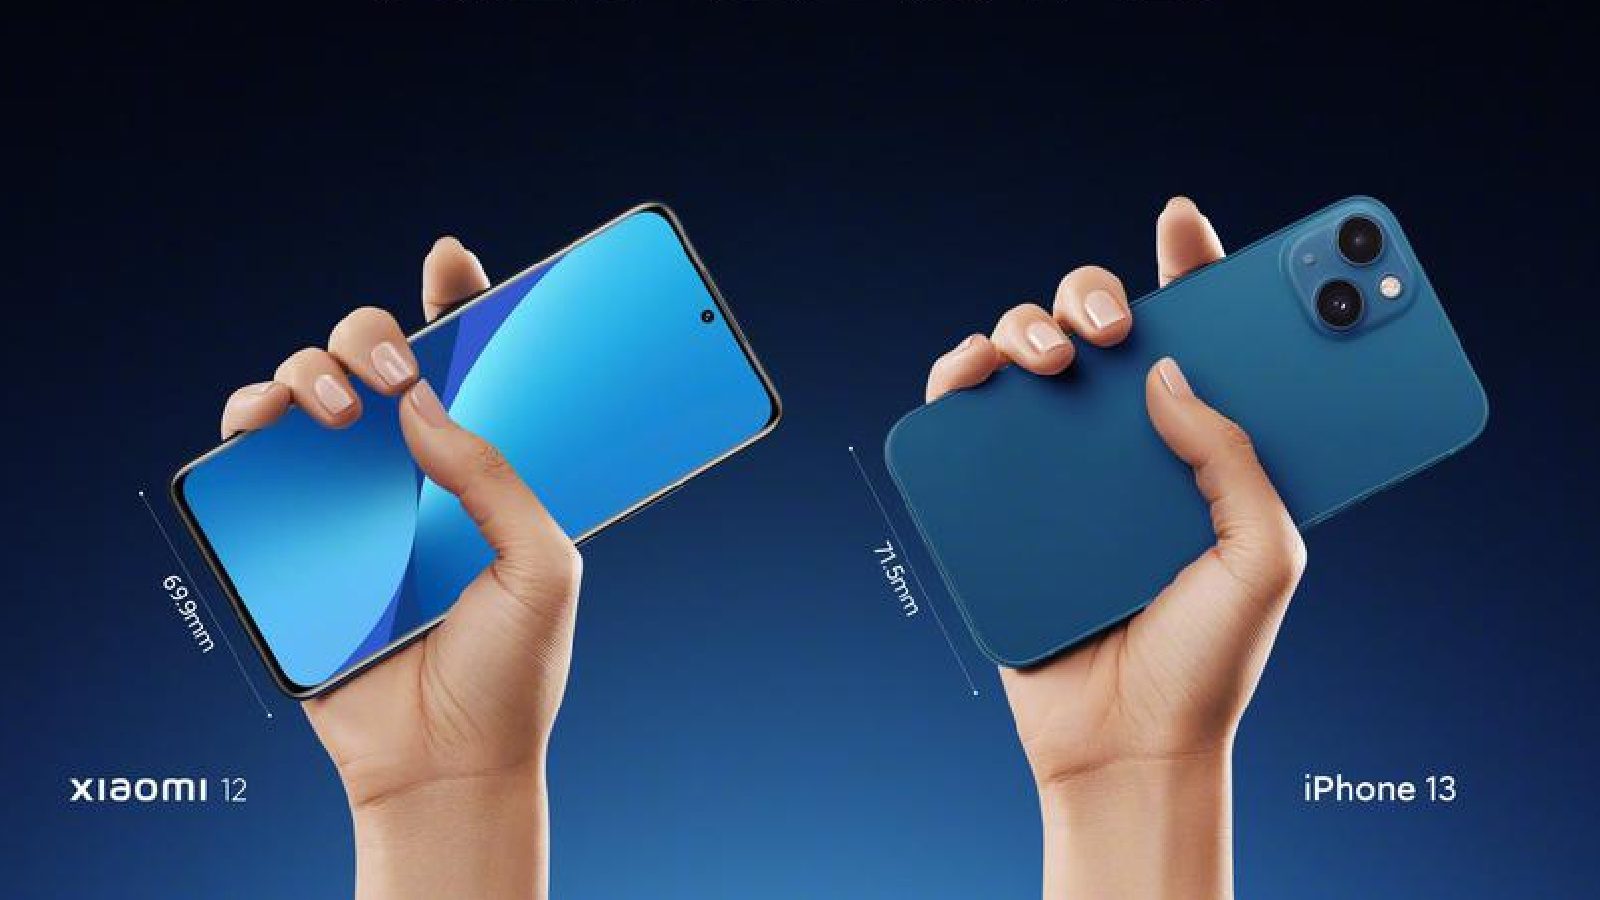 Лэй Цзюнь сравнил iPhone 13 с предстоящей серией Xiaomi 12